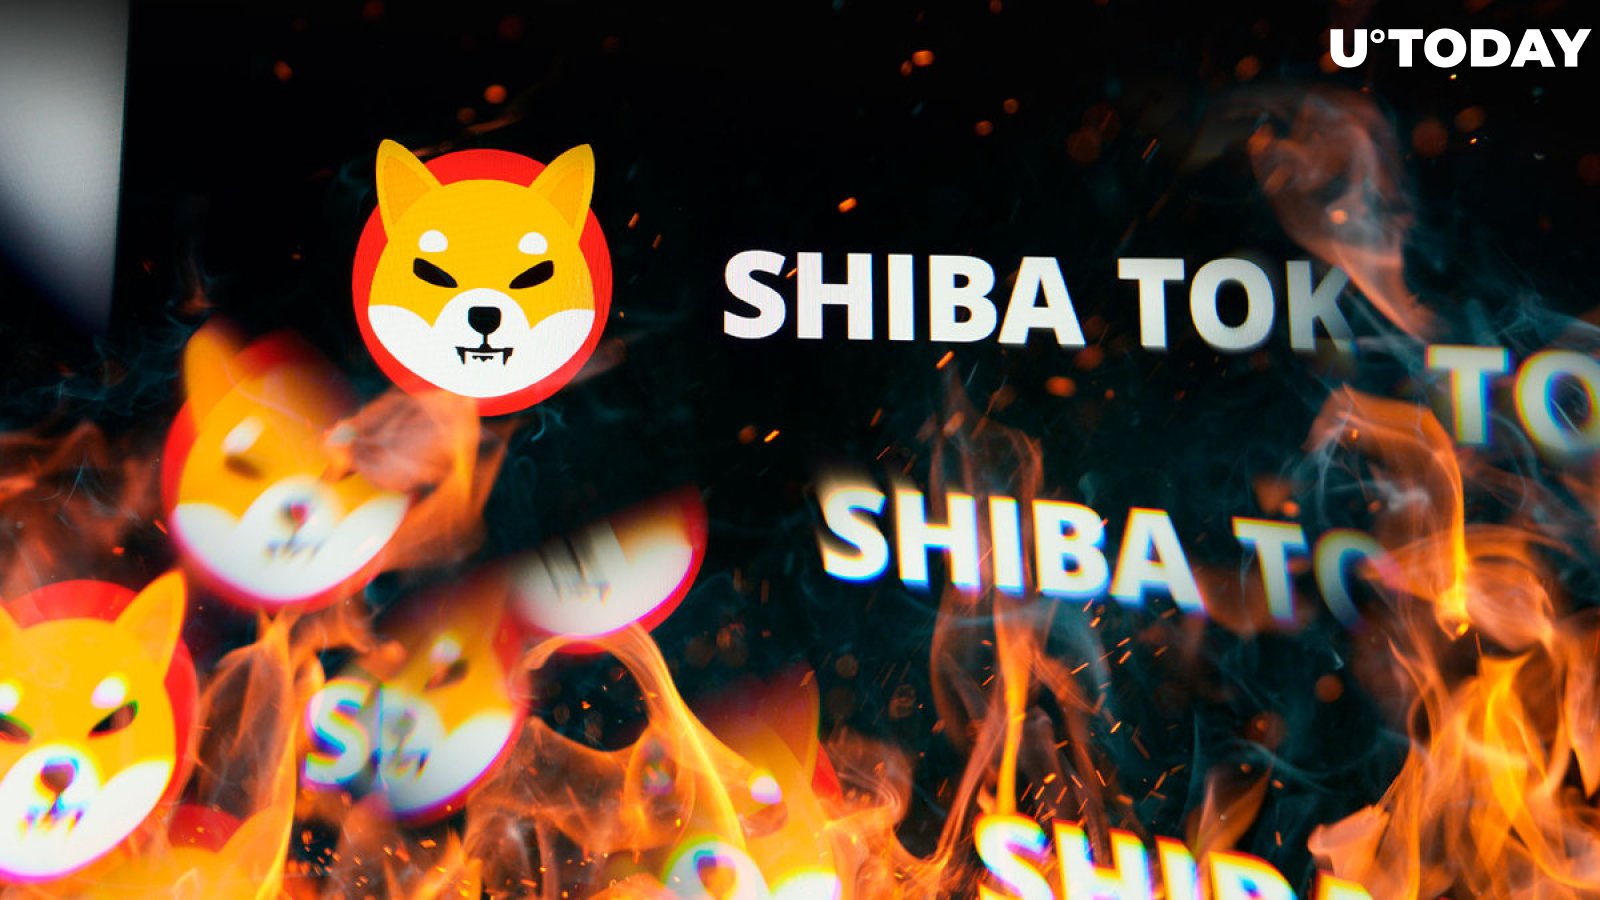 Shiba Inu Burn Rate Spikes 130%